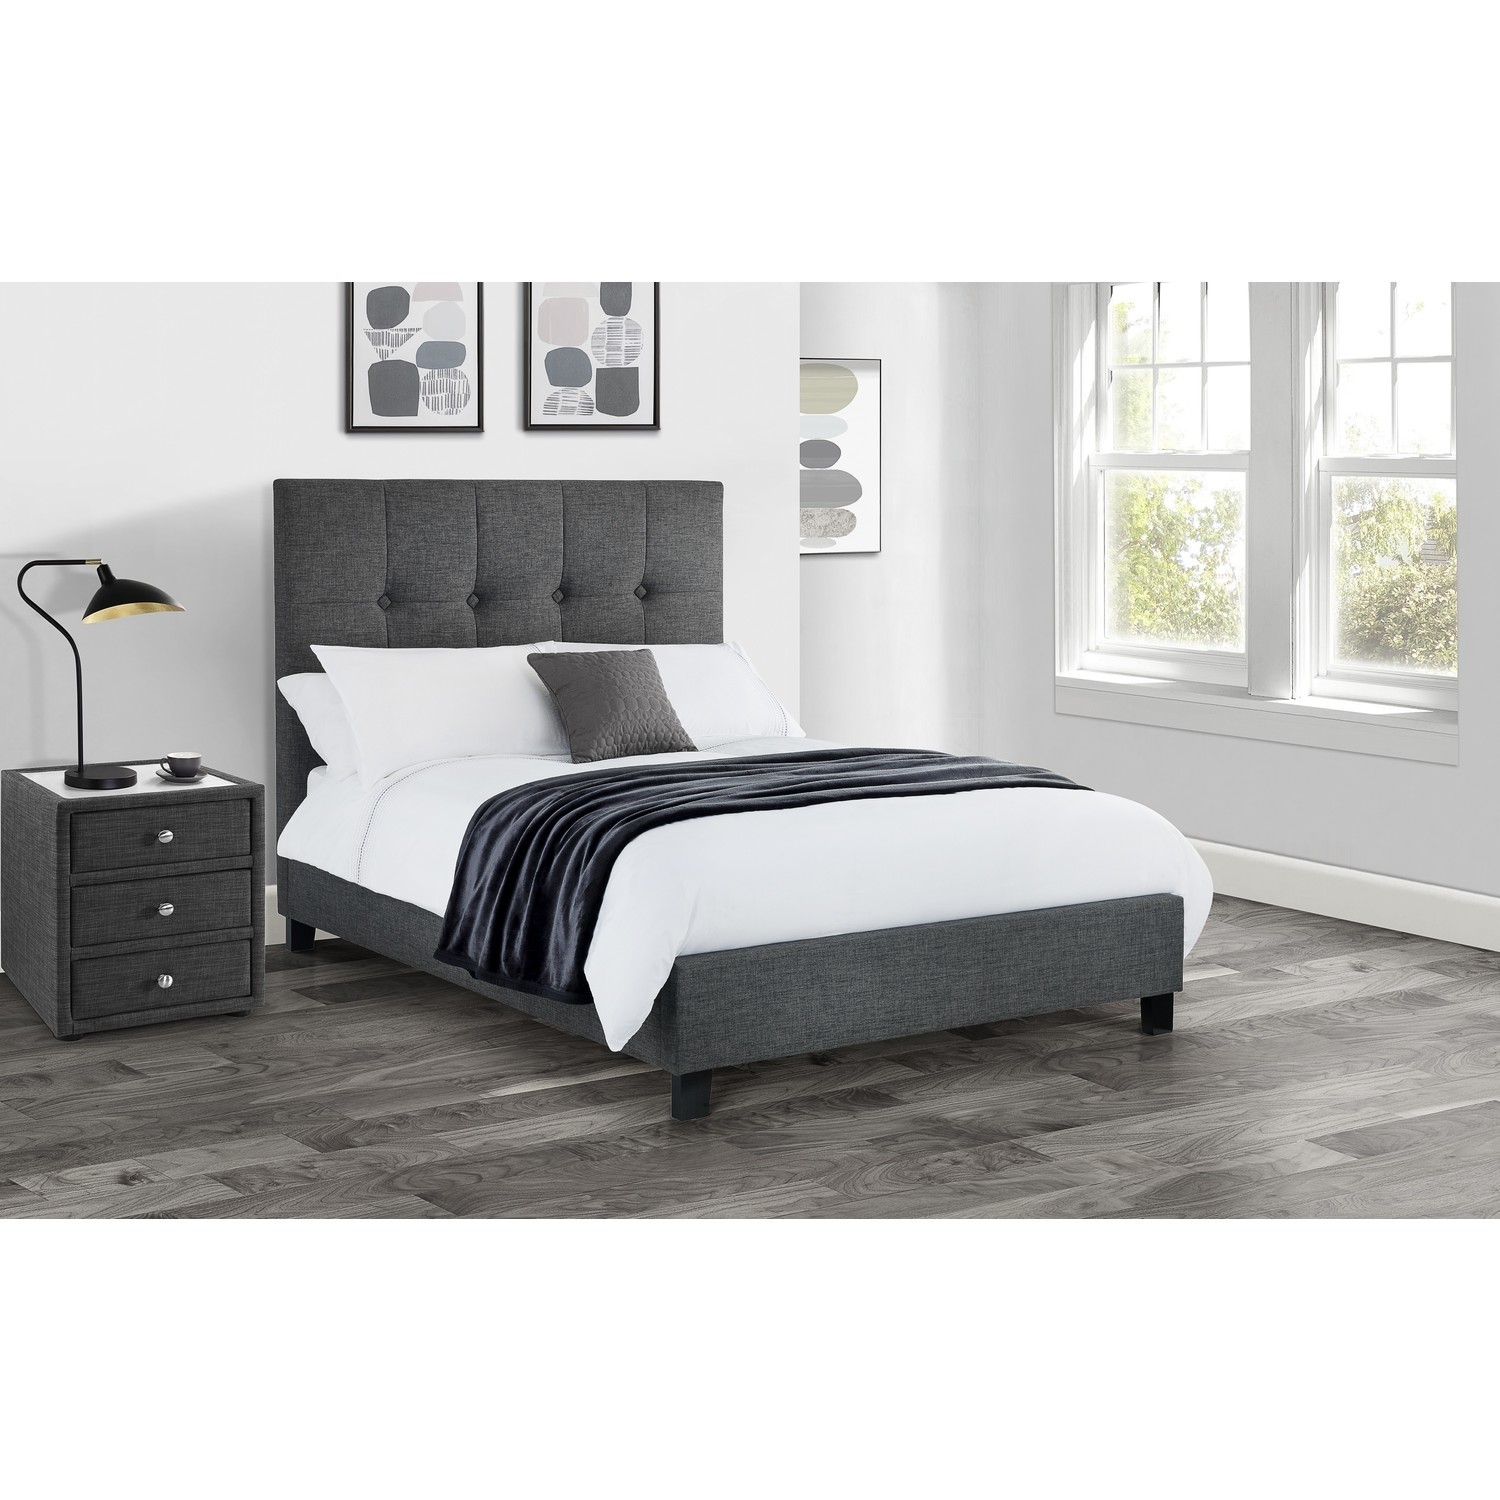 Dark Grey Super King Size Bed Frame, High King Bed Base